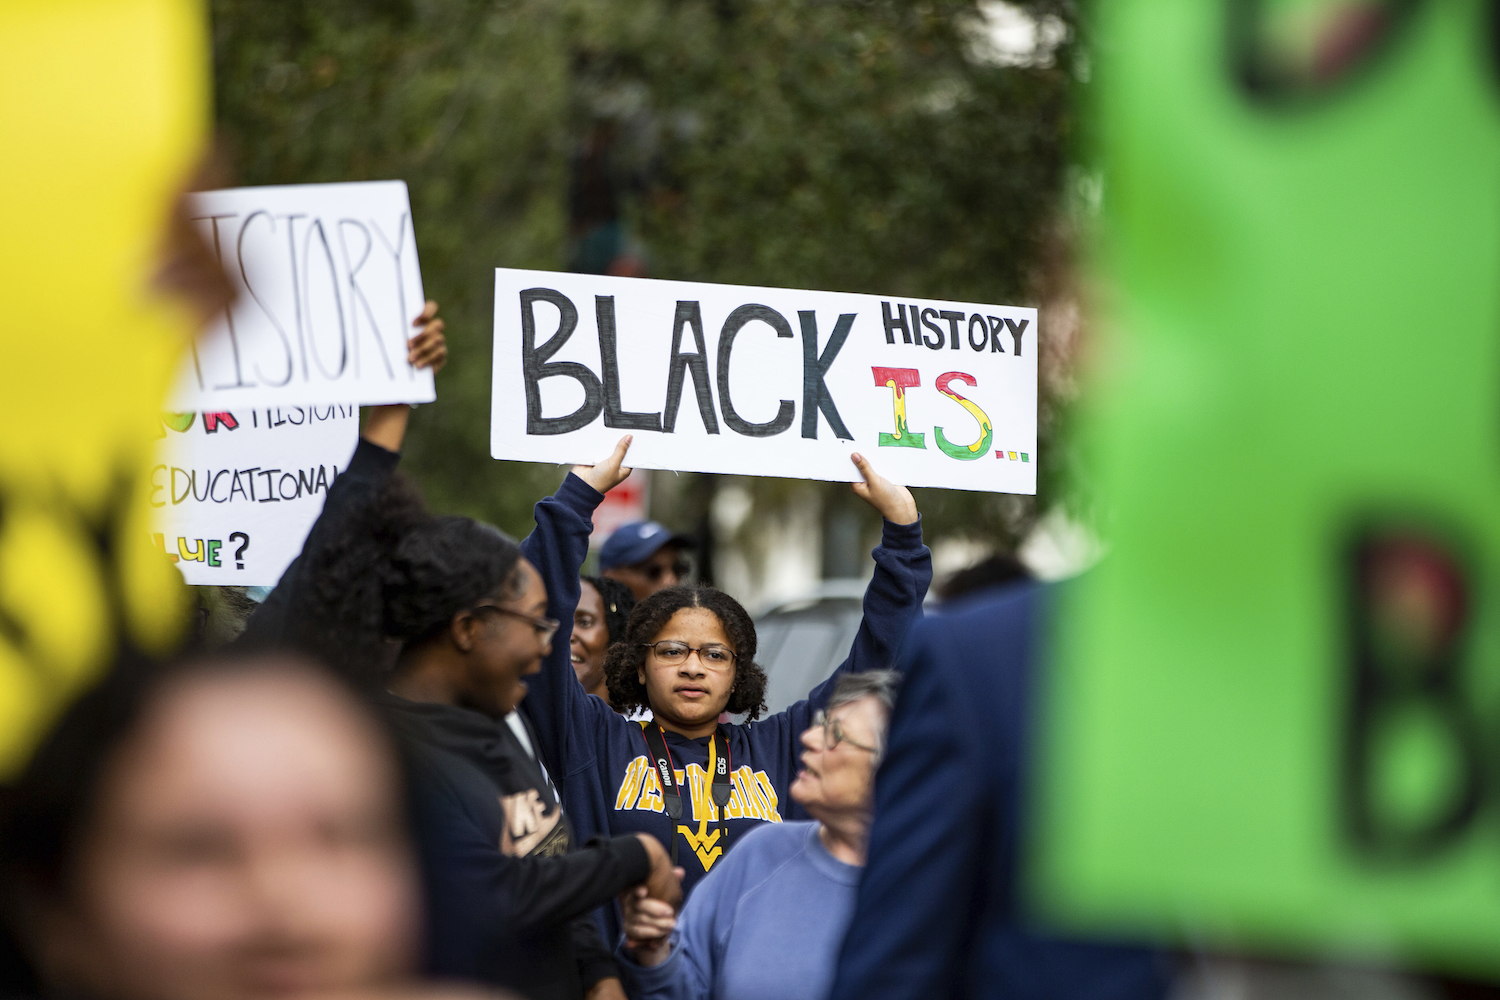 Une jeune femme brandissait une pancarte lors d’une manifestation organisée par le National Action Network à Tallahassee, en Floride, le 15 février 2023, suite au refus du gouverneur Ron DeSantis d’autoriser l’enseignement du cours d’histoire « AP African American Studies » dans les écoles publiques de cet État.